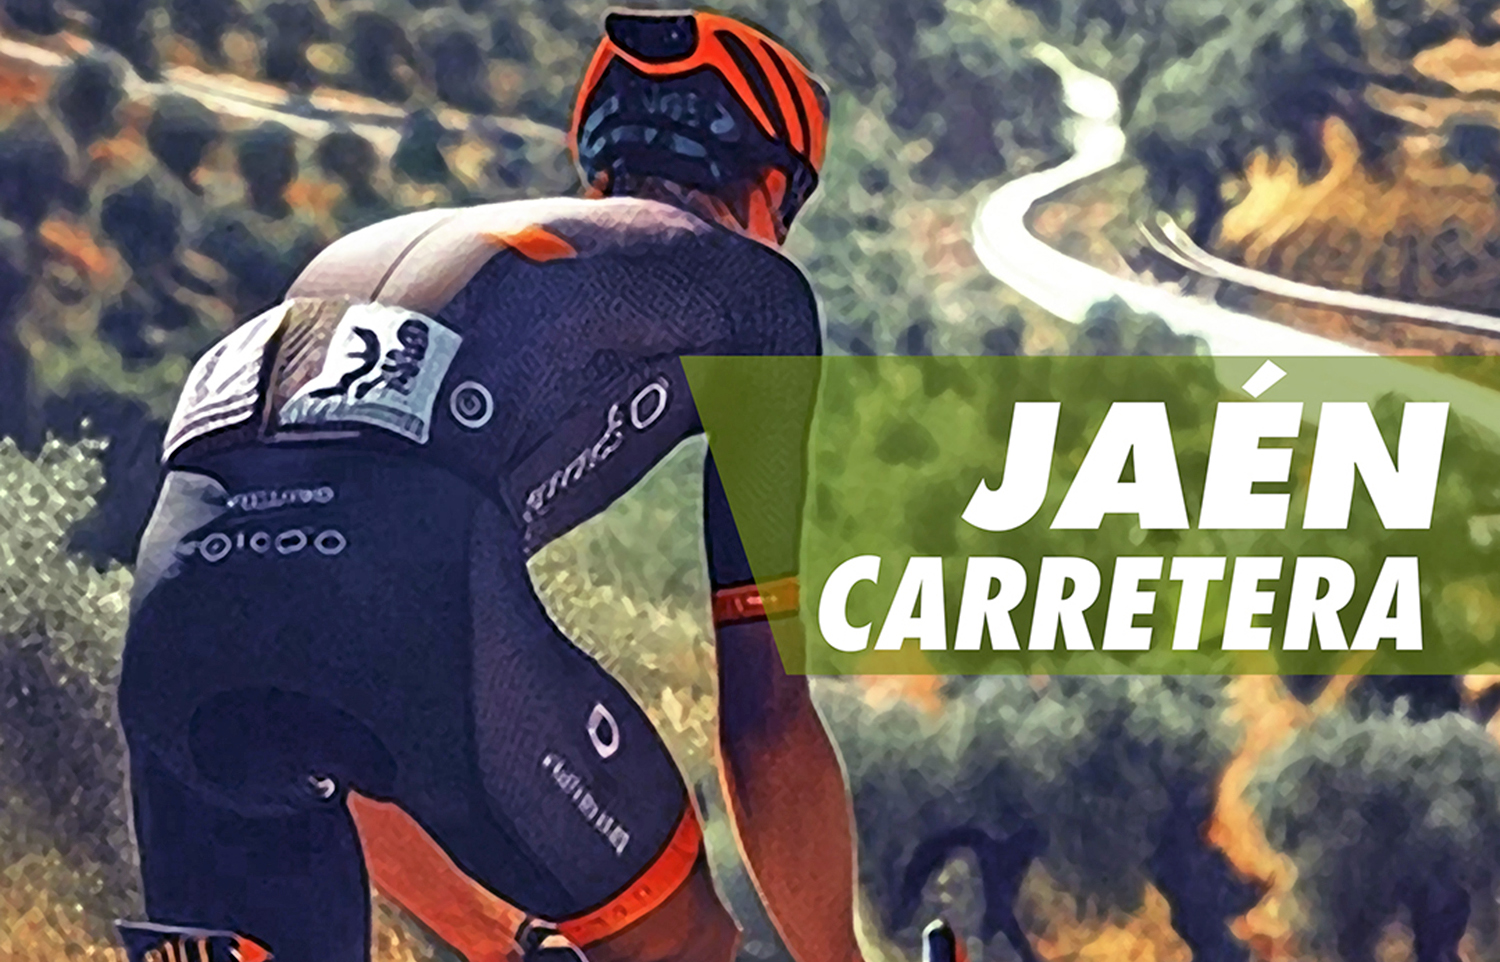 Siete pruebas ciclistas integrarán de febrero a junio de este año el Circuito Provincial Jaén Carretera de esta temporada